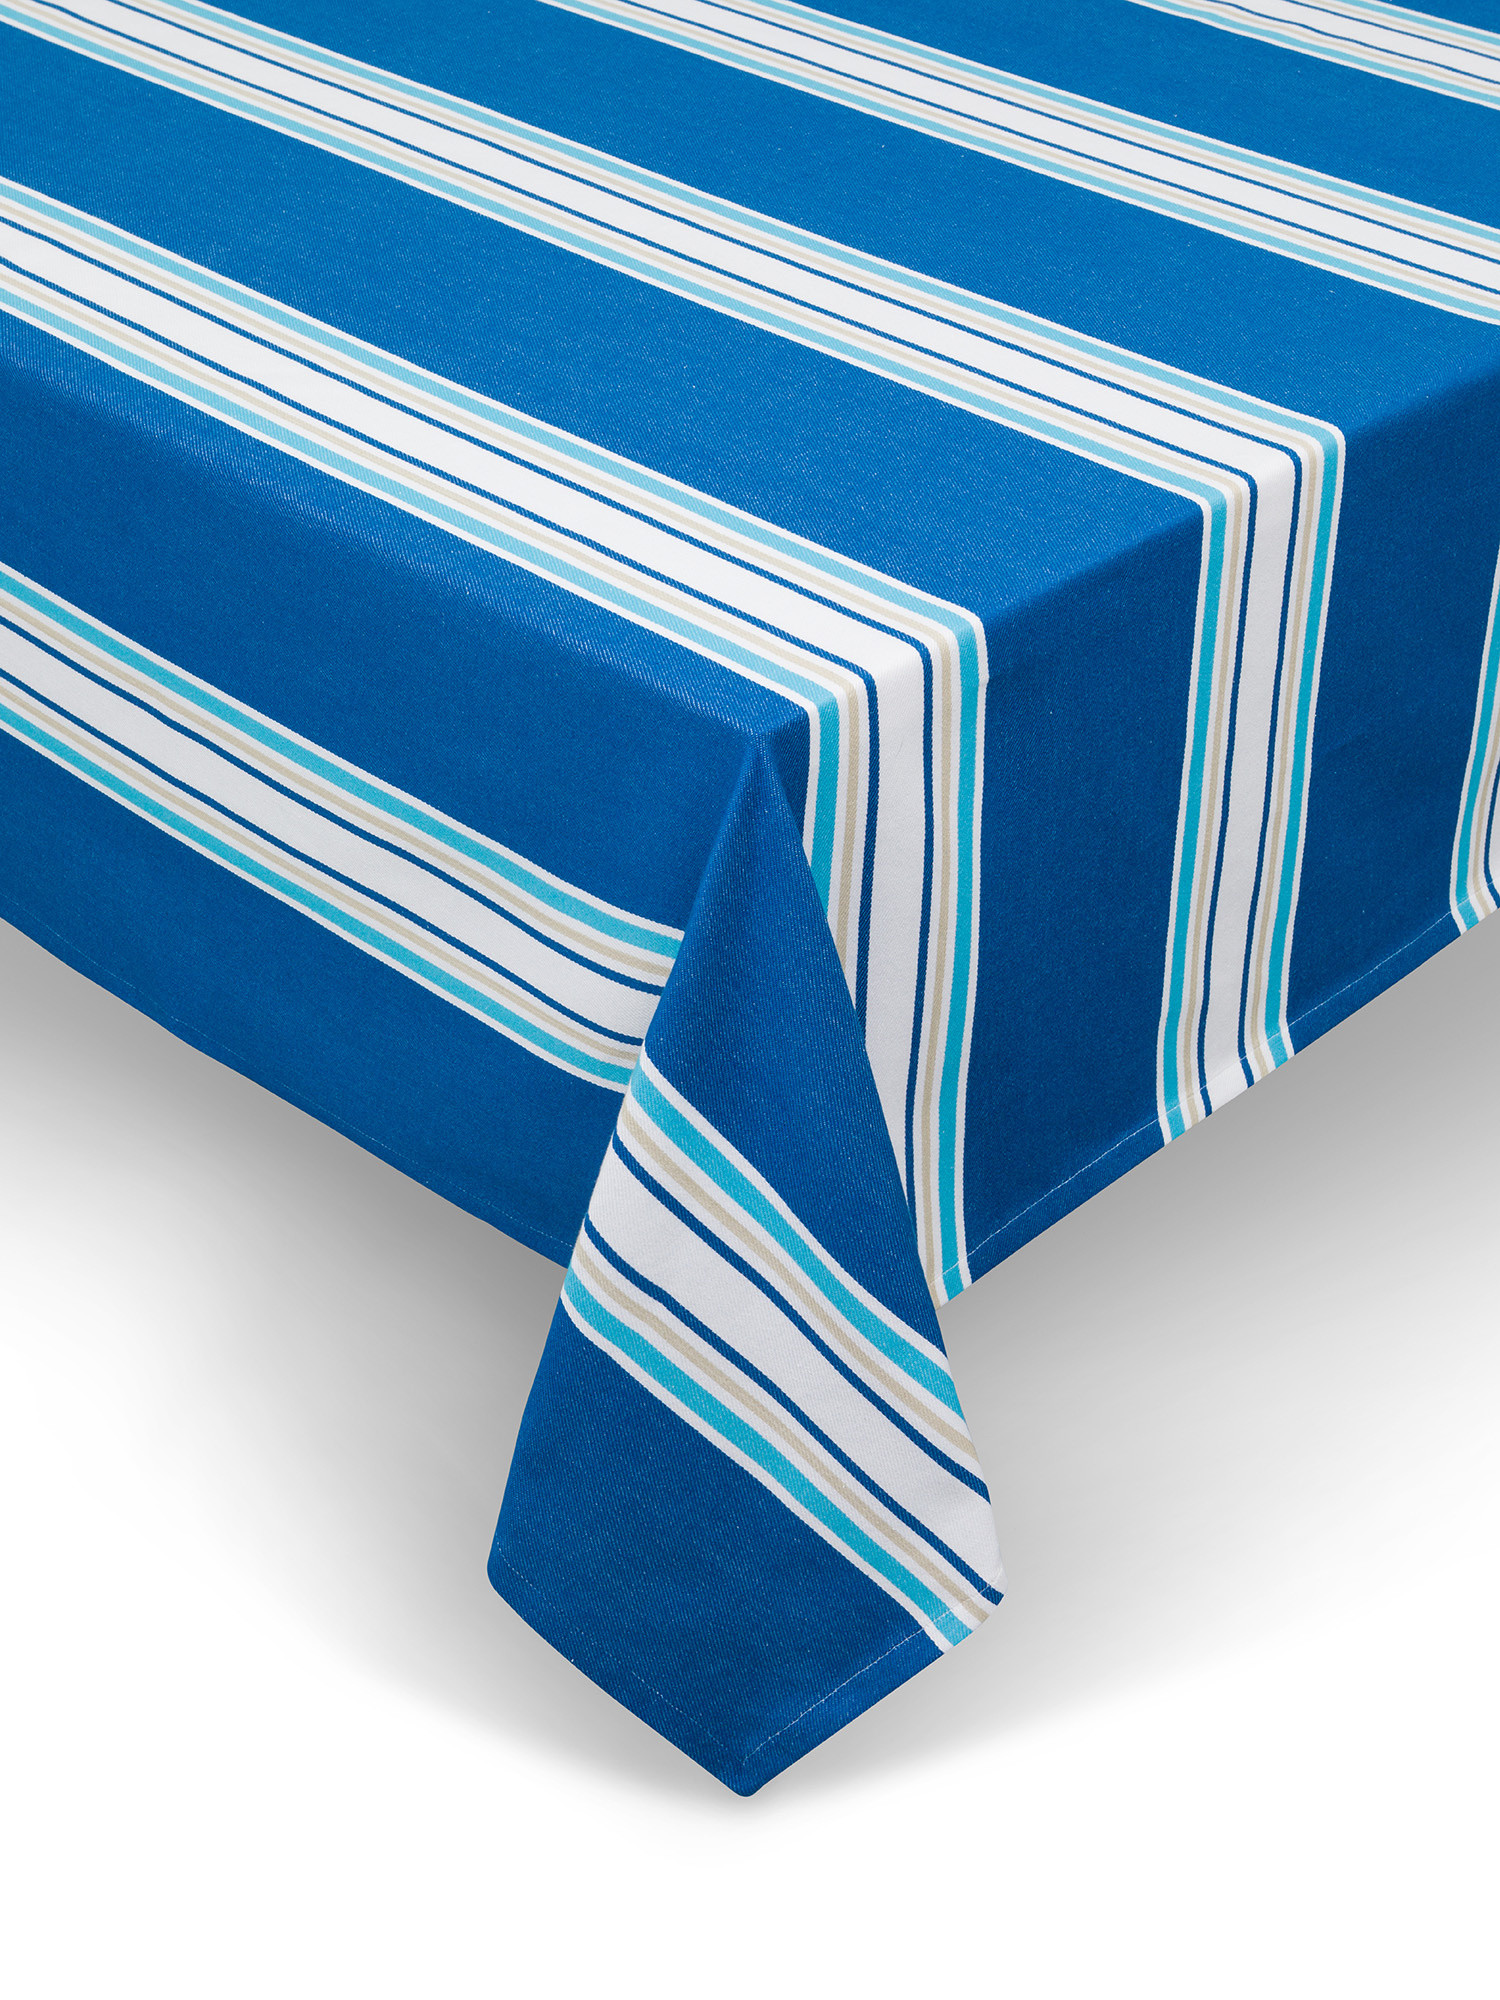 Tovaglia a strisce in puro cotone, Blu, large image number 0